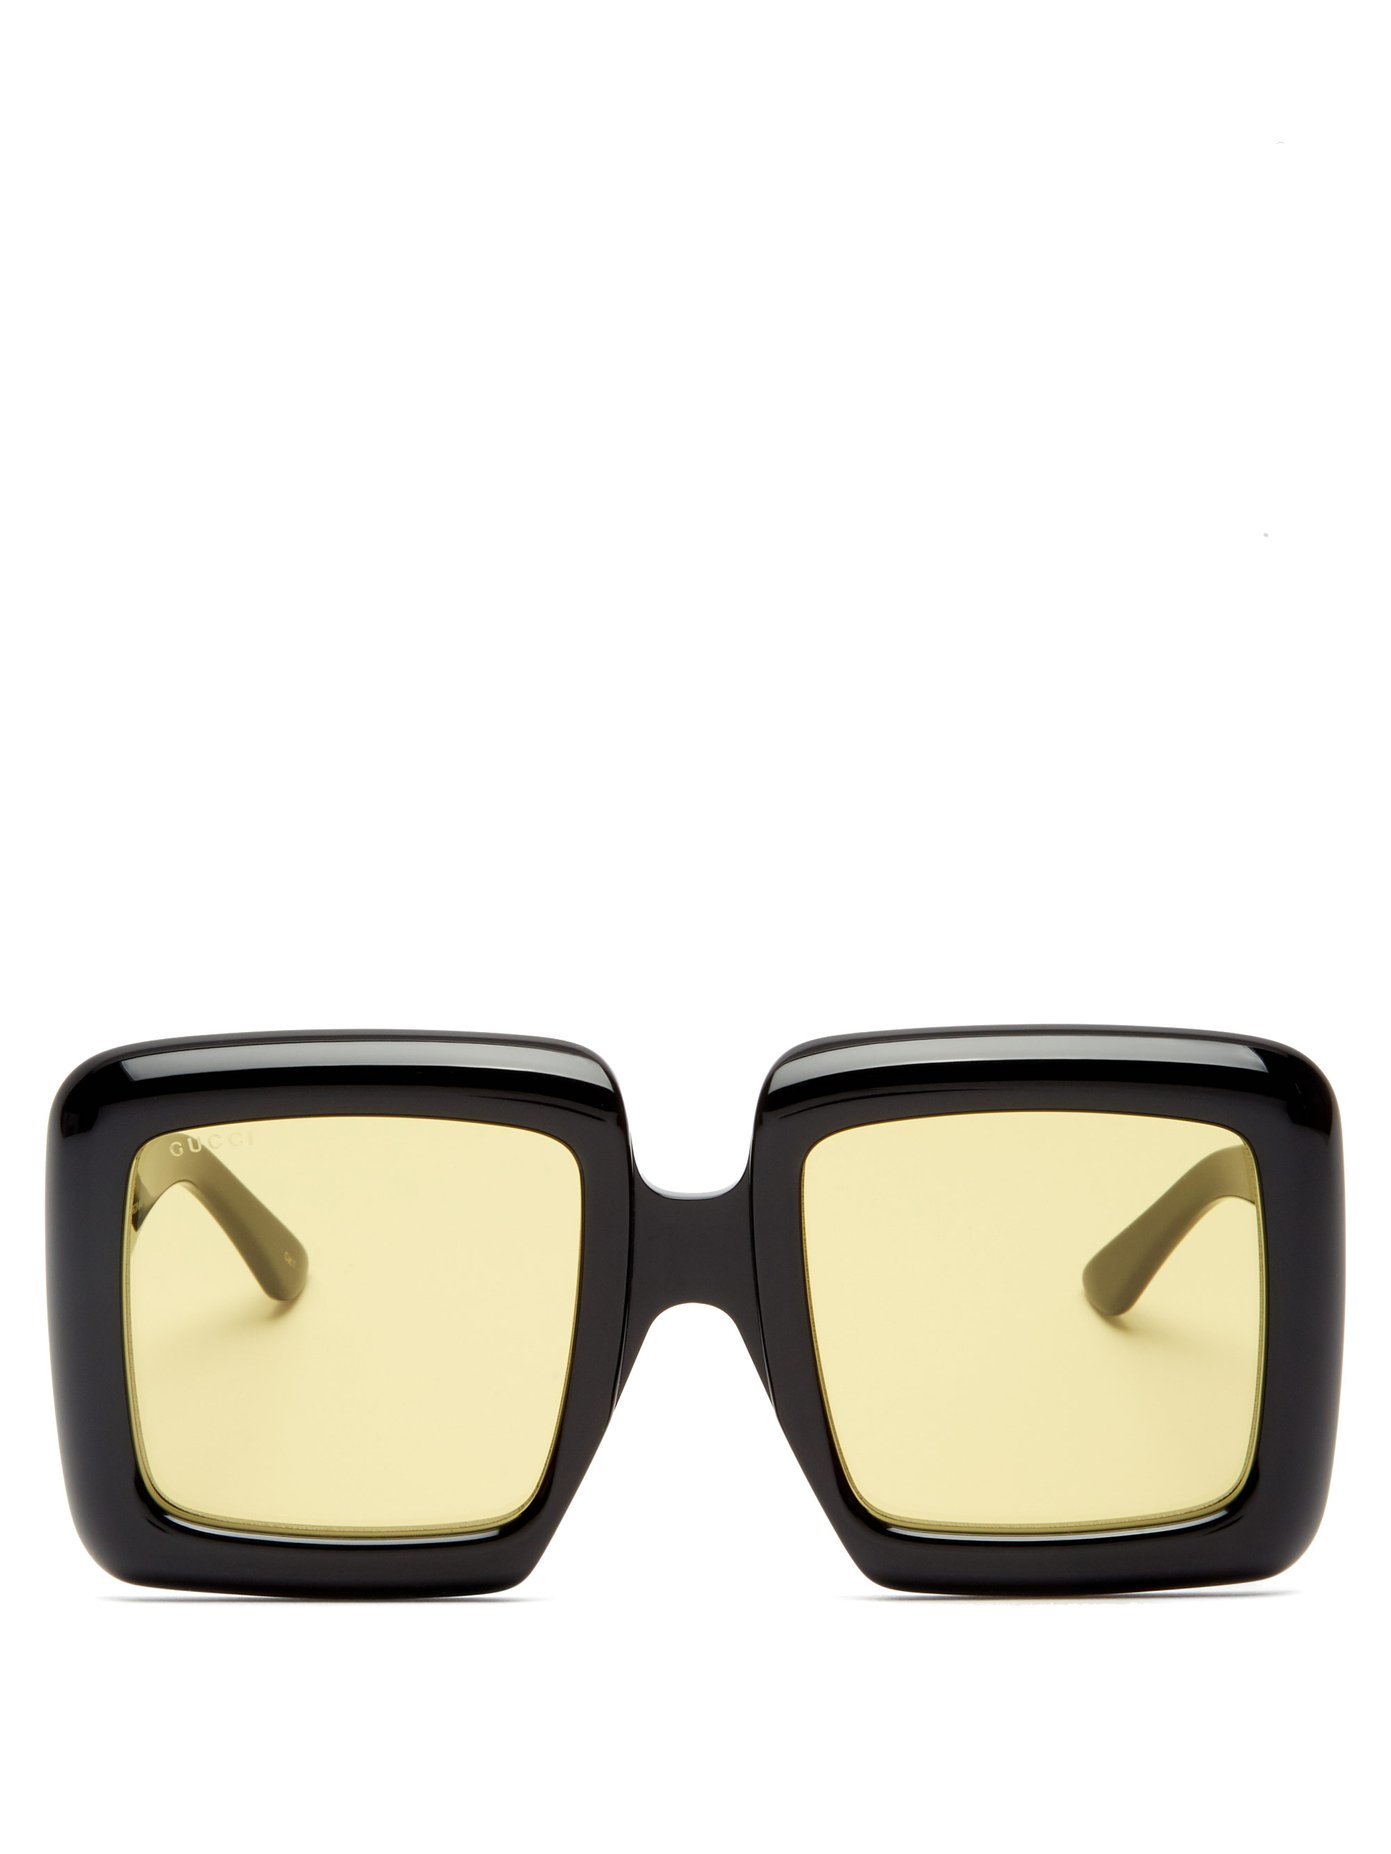 gucci large square sunglasses